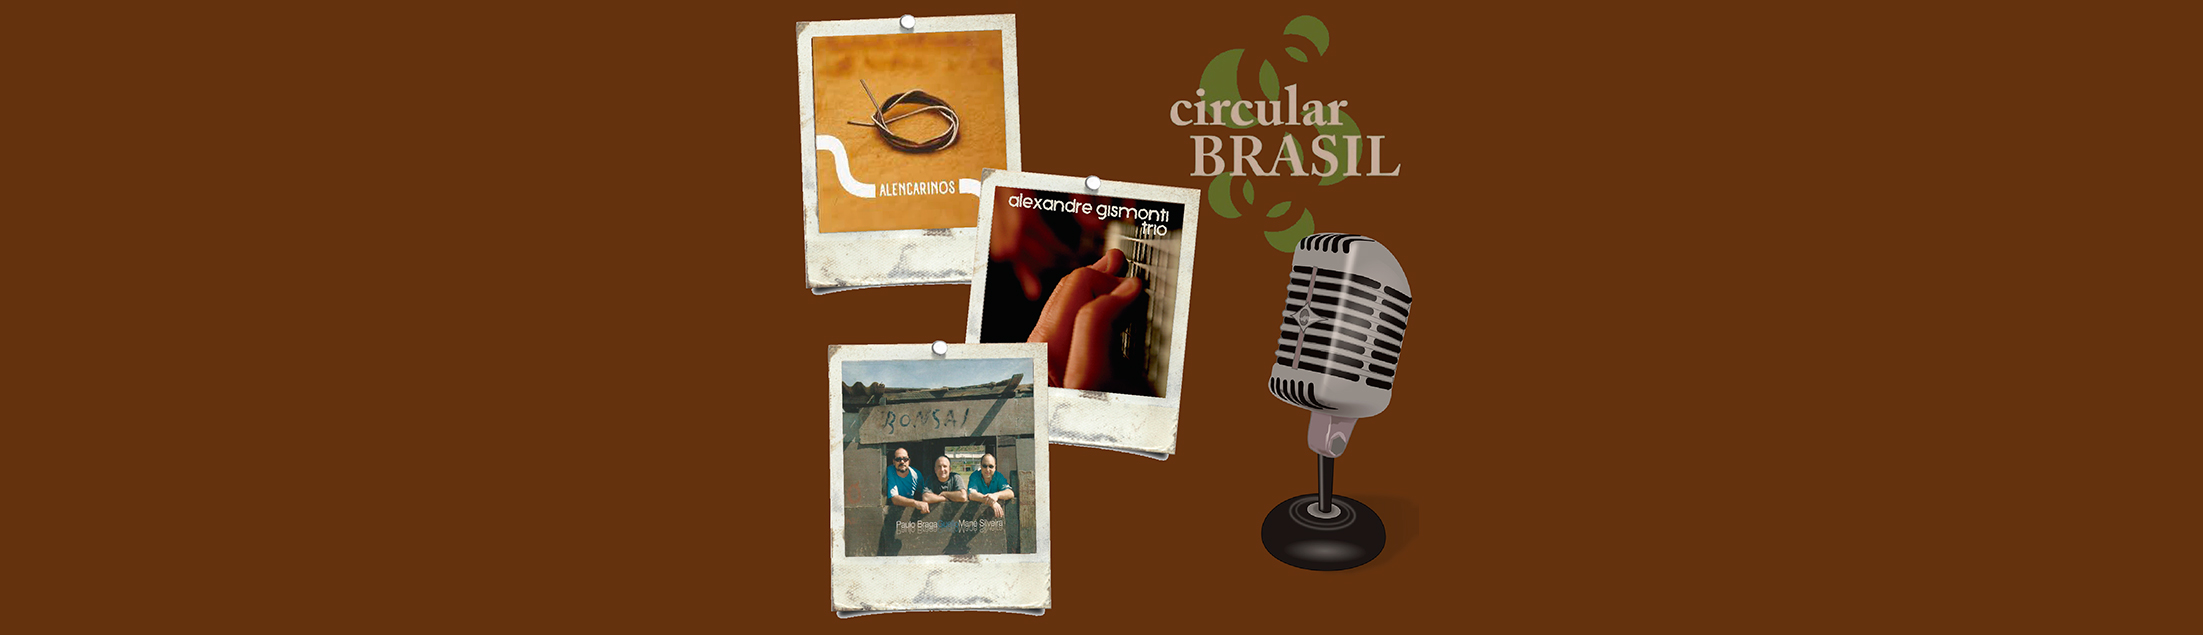 Vários talentos de diferentes cidades do país e uma justa homenagem no Circular Brasil